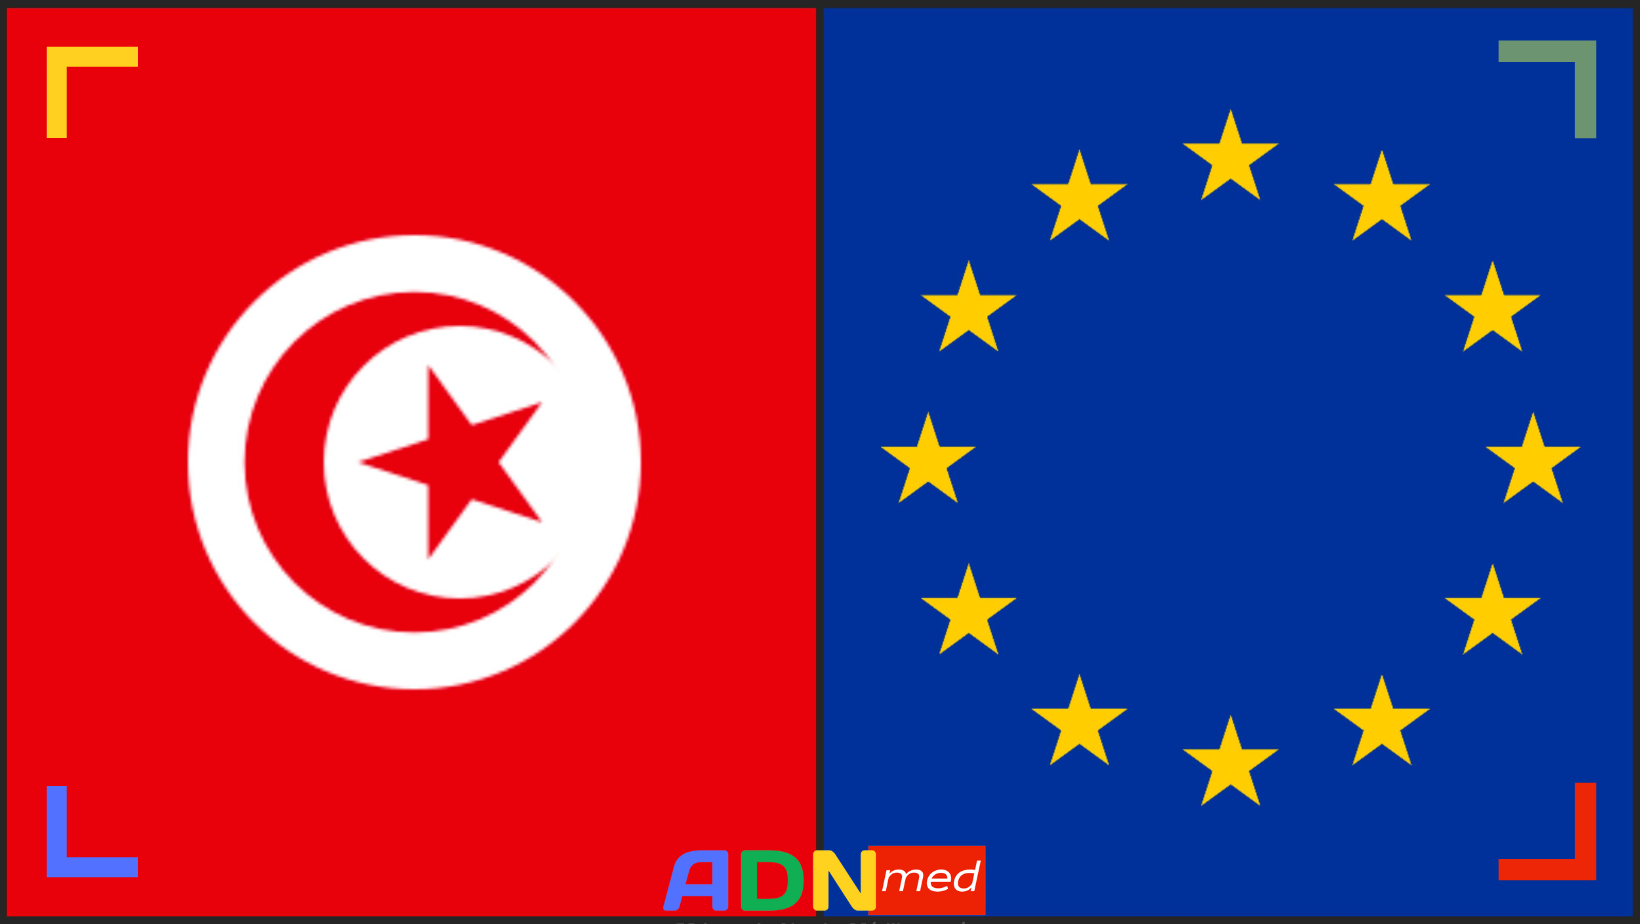 Tunisie : le parlement européen adopte une motion contre les libertés d’expression et d’association